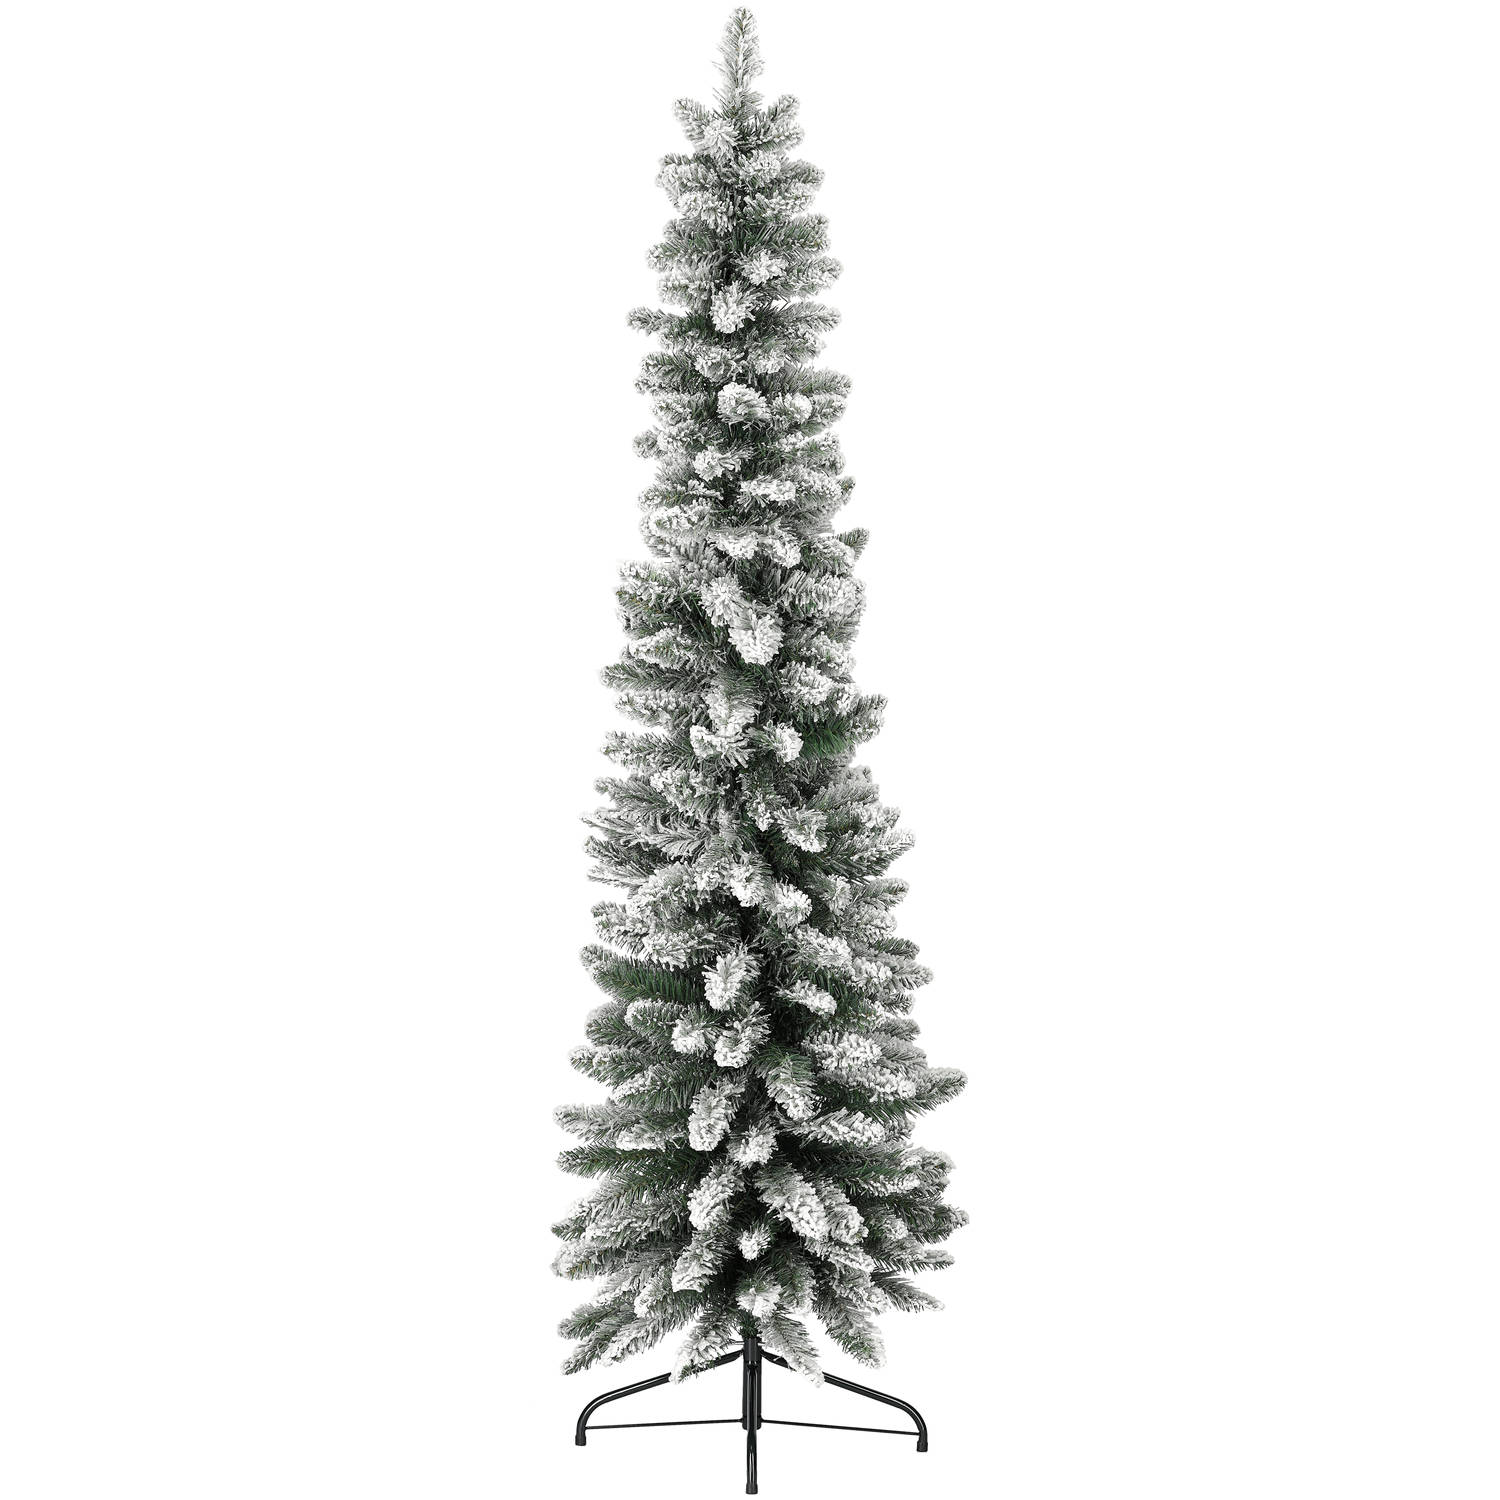 Blokker smalle kerstboom met sneeuw 180cm